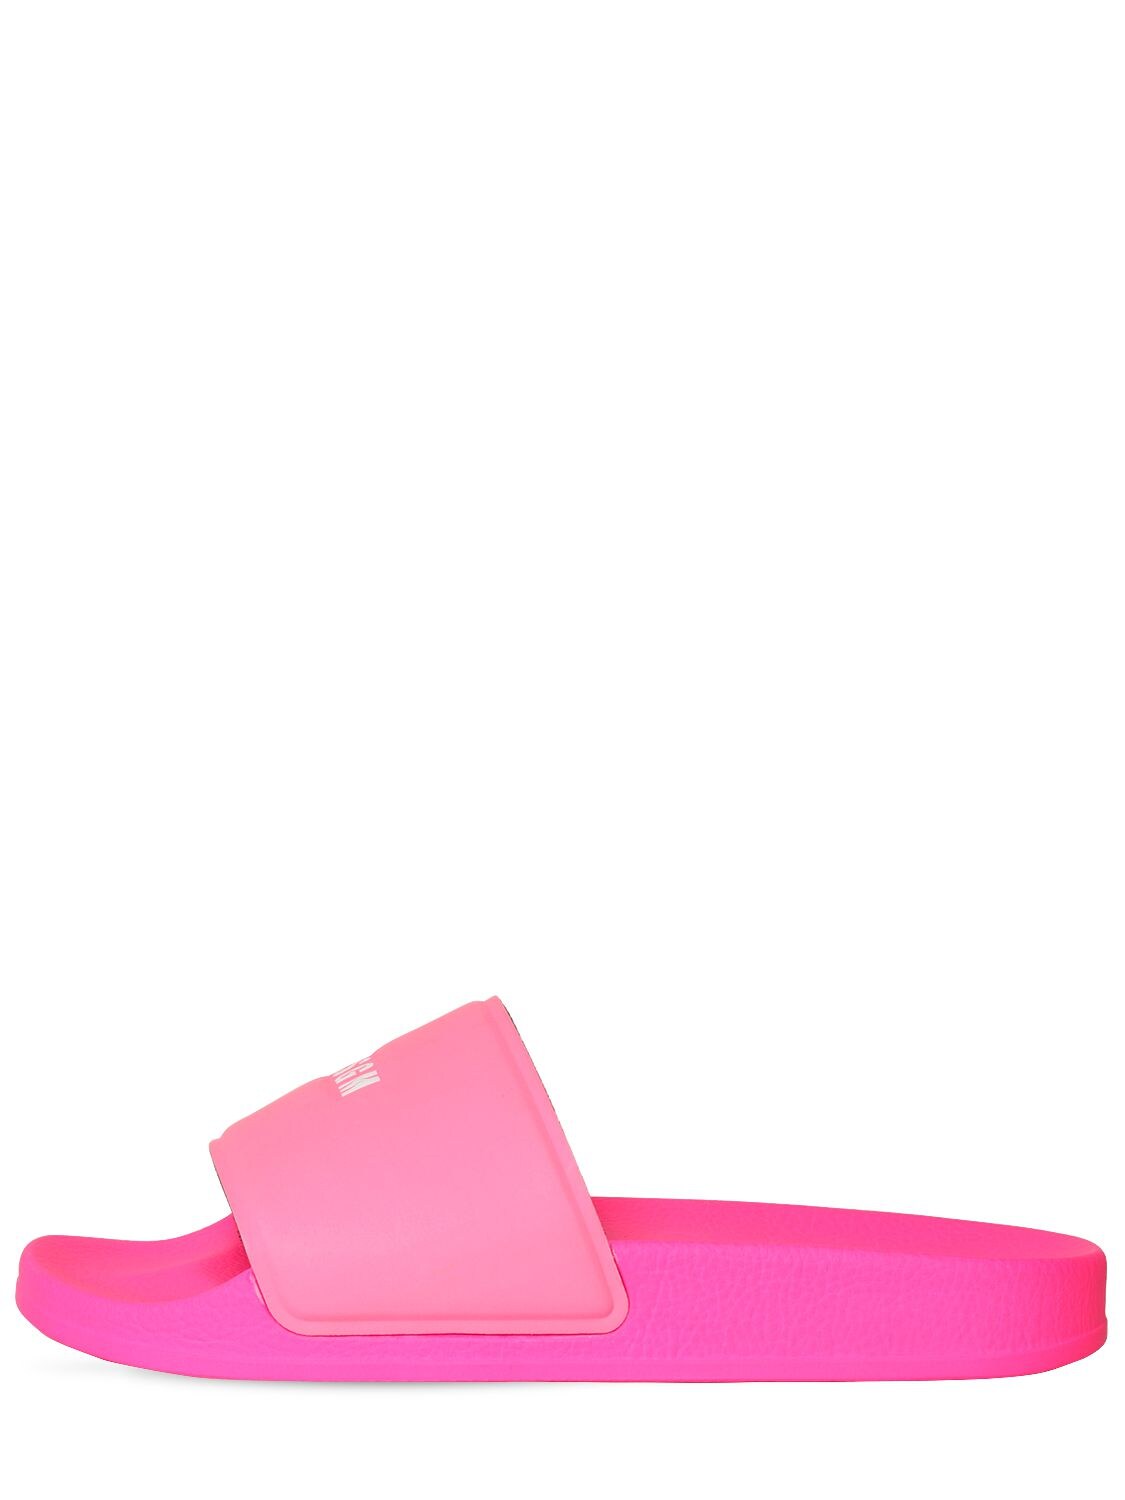 Msgm 20mm Neoprene Slide Sandals In Neon Fuchsia